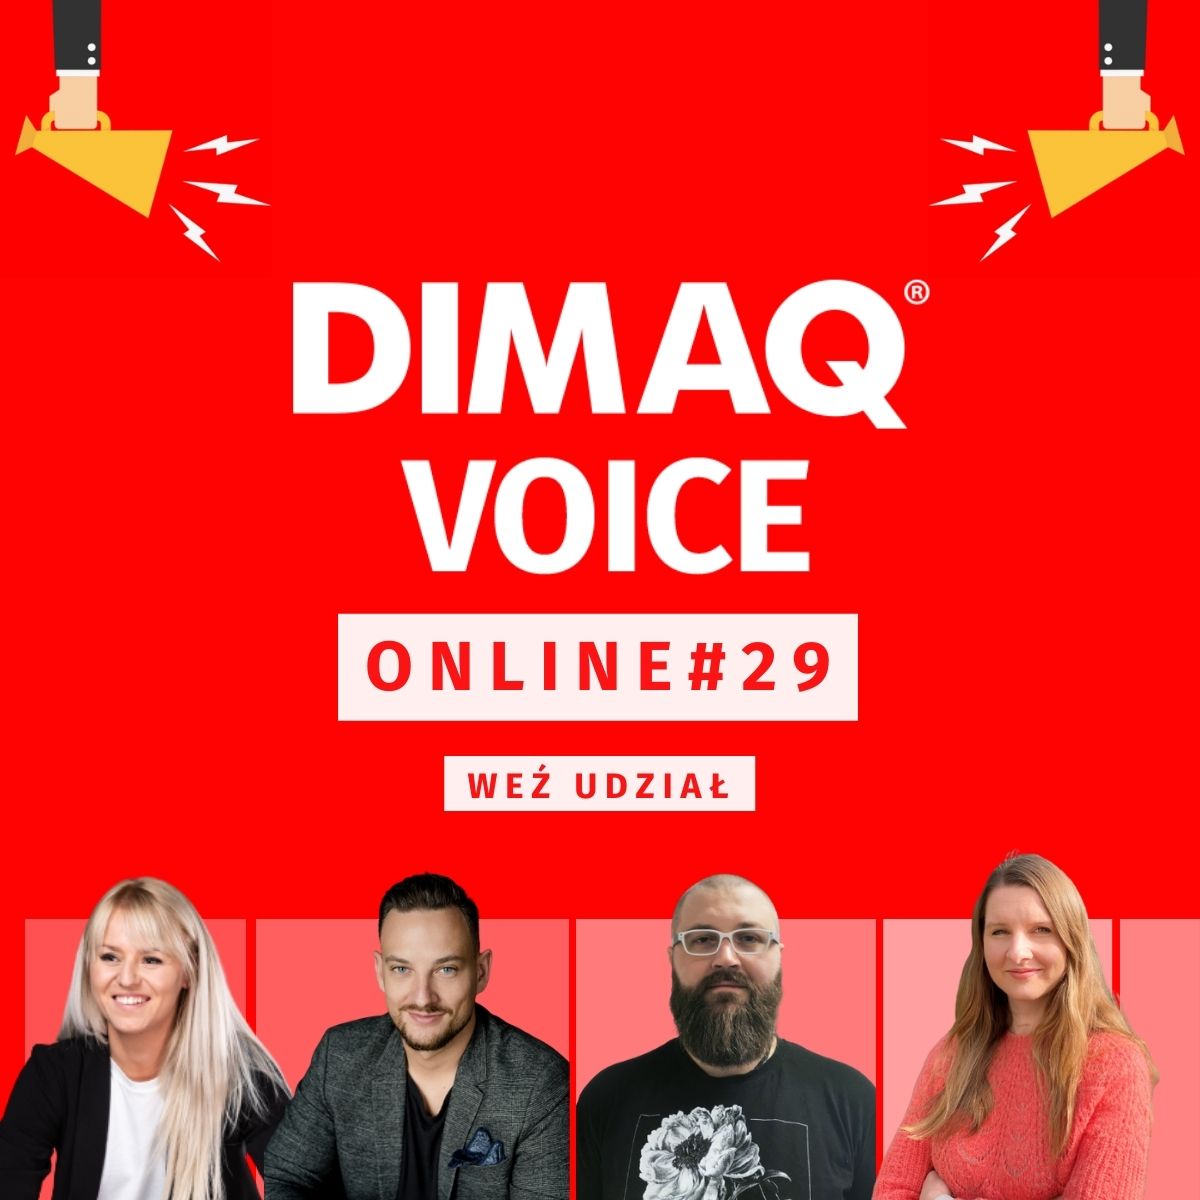 DIMAQ Voice Online 26 kwietnia prelegenci